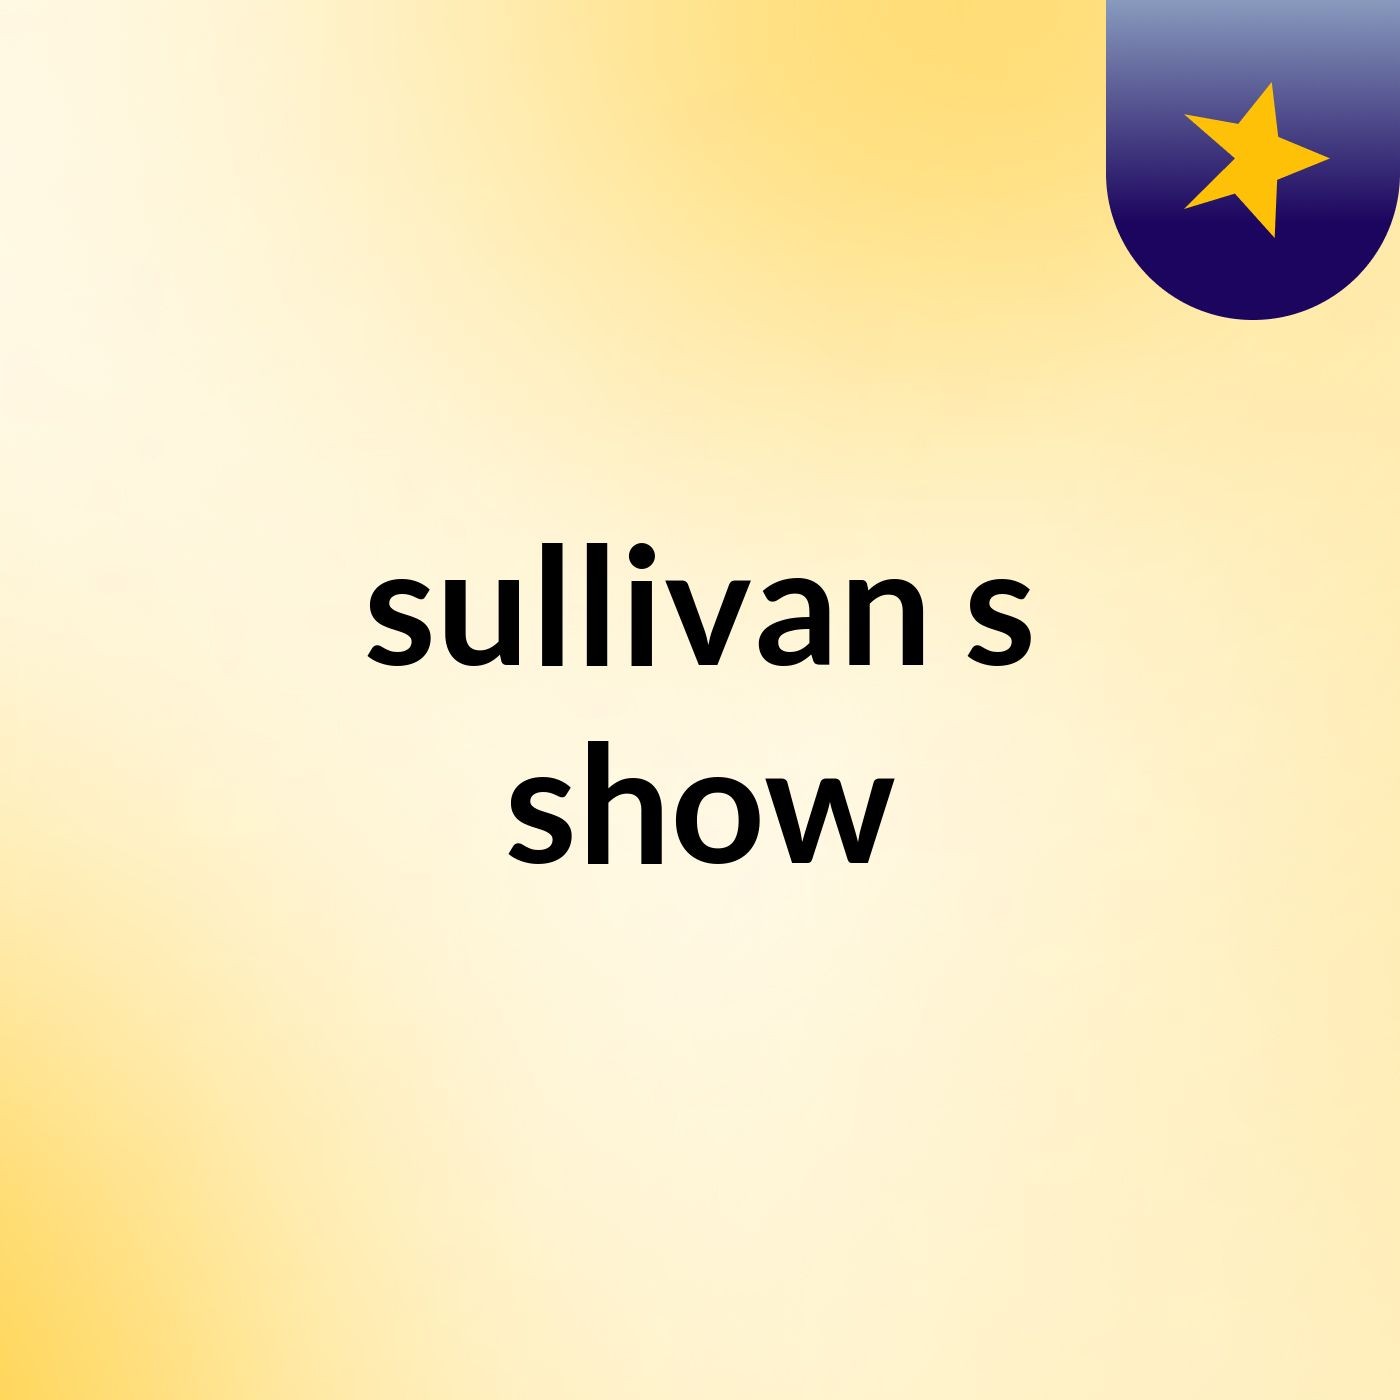 sullivan's show